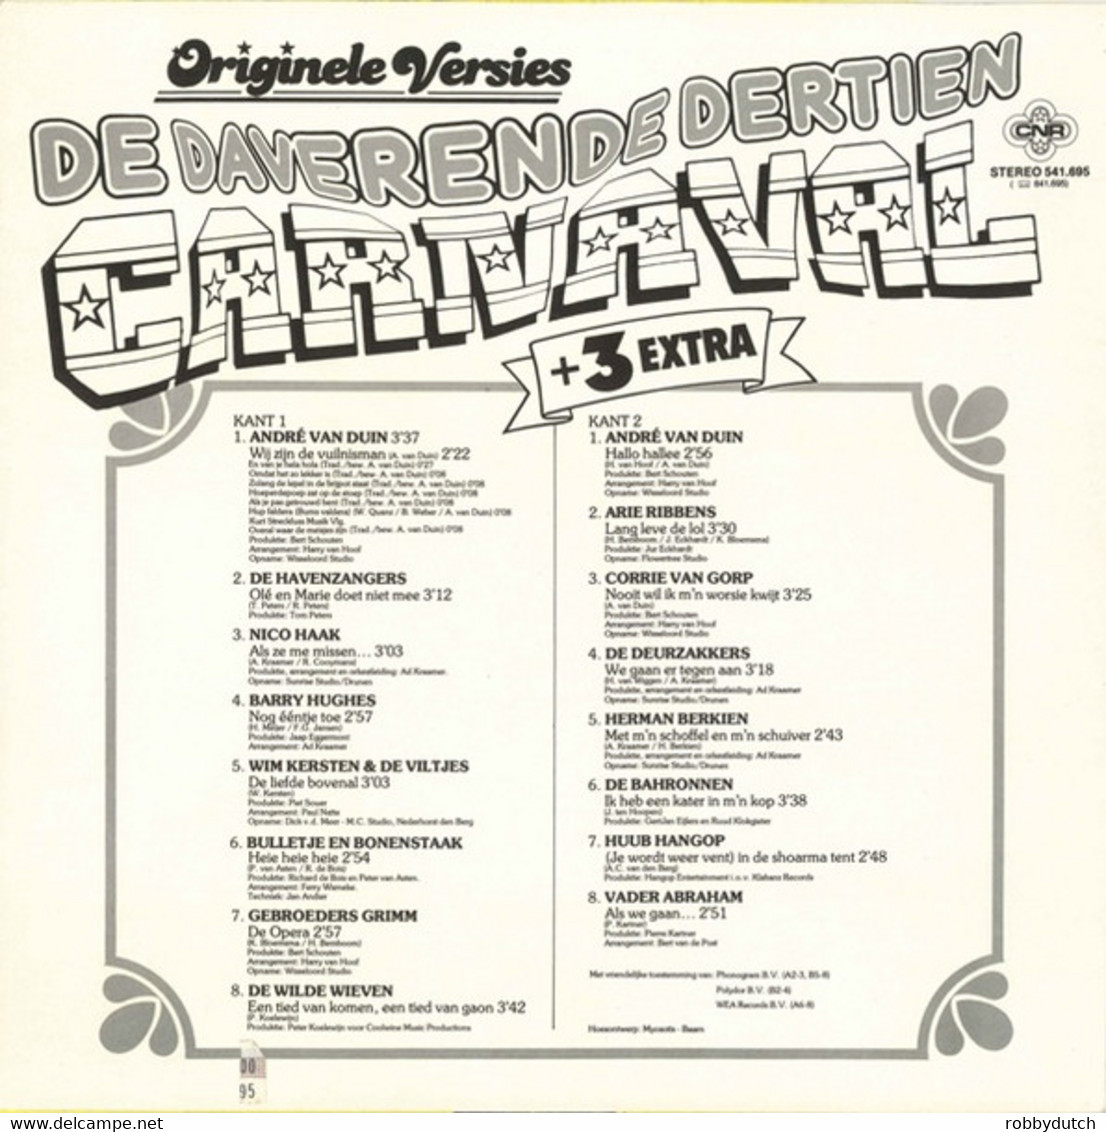 * LP *  DE DAVERENDE DERTIEN CARNAVAL + 3 EXTRA (Holland 1984) - Andere - Nederlandstalig